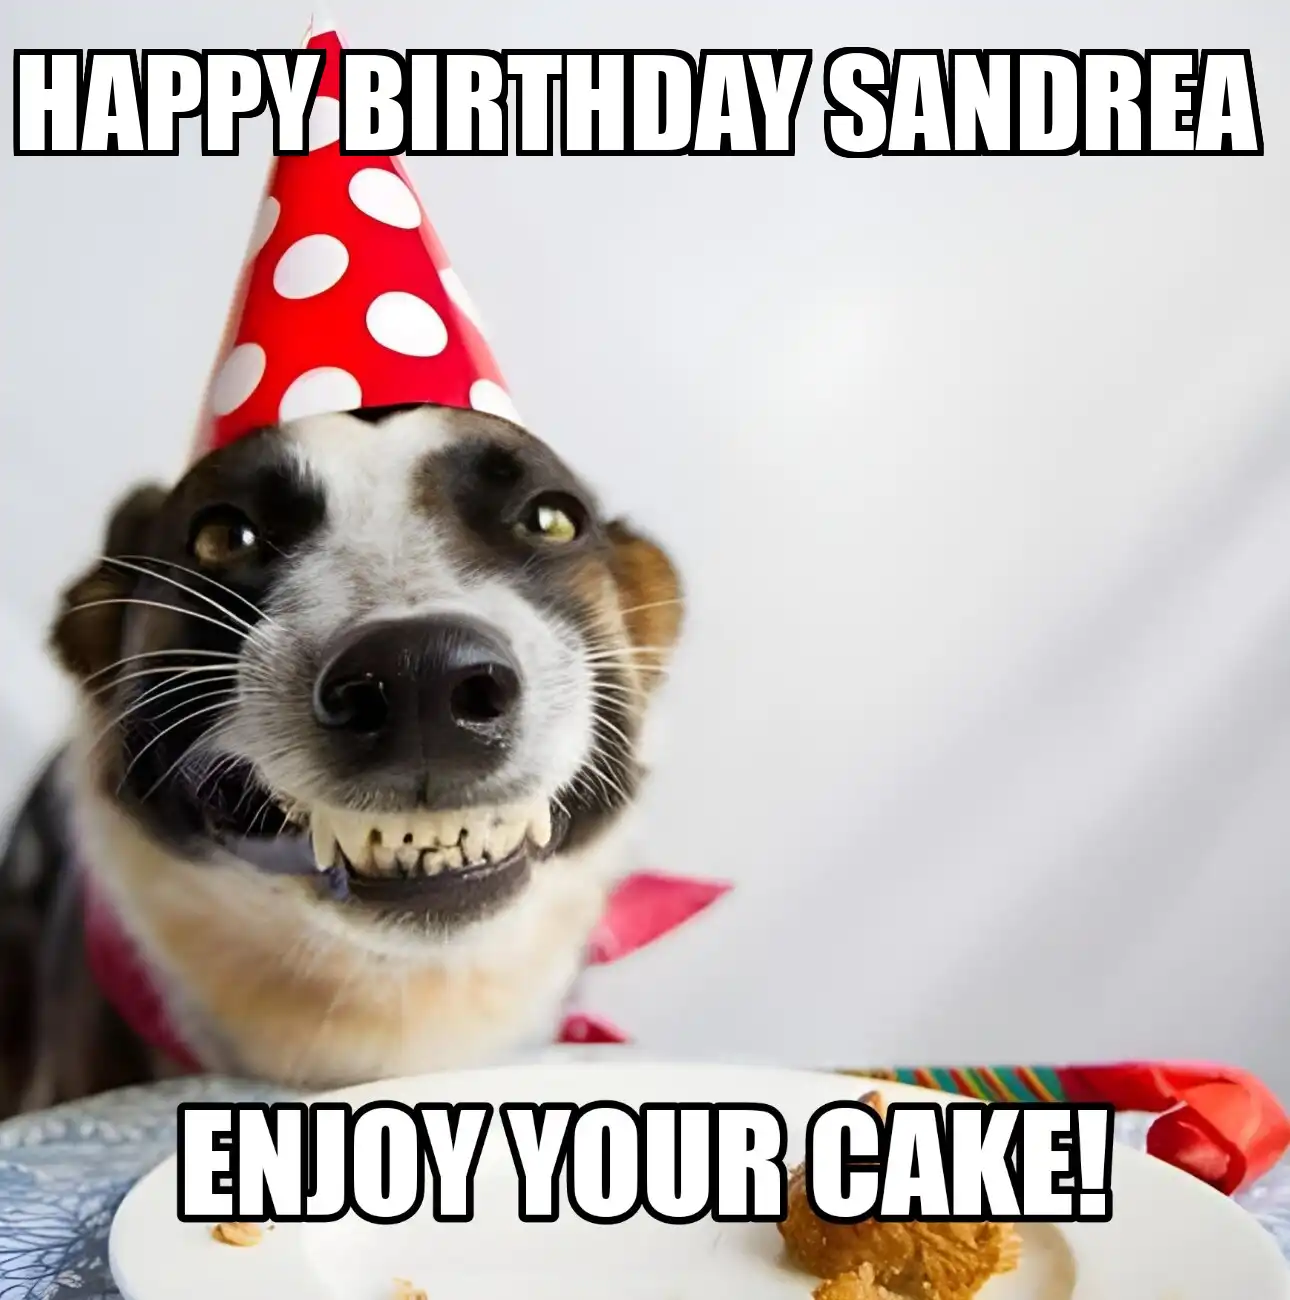 Happy Birthday Sandrea Enjoy Your Cake Dog Meme